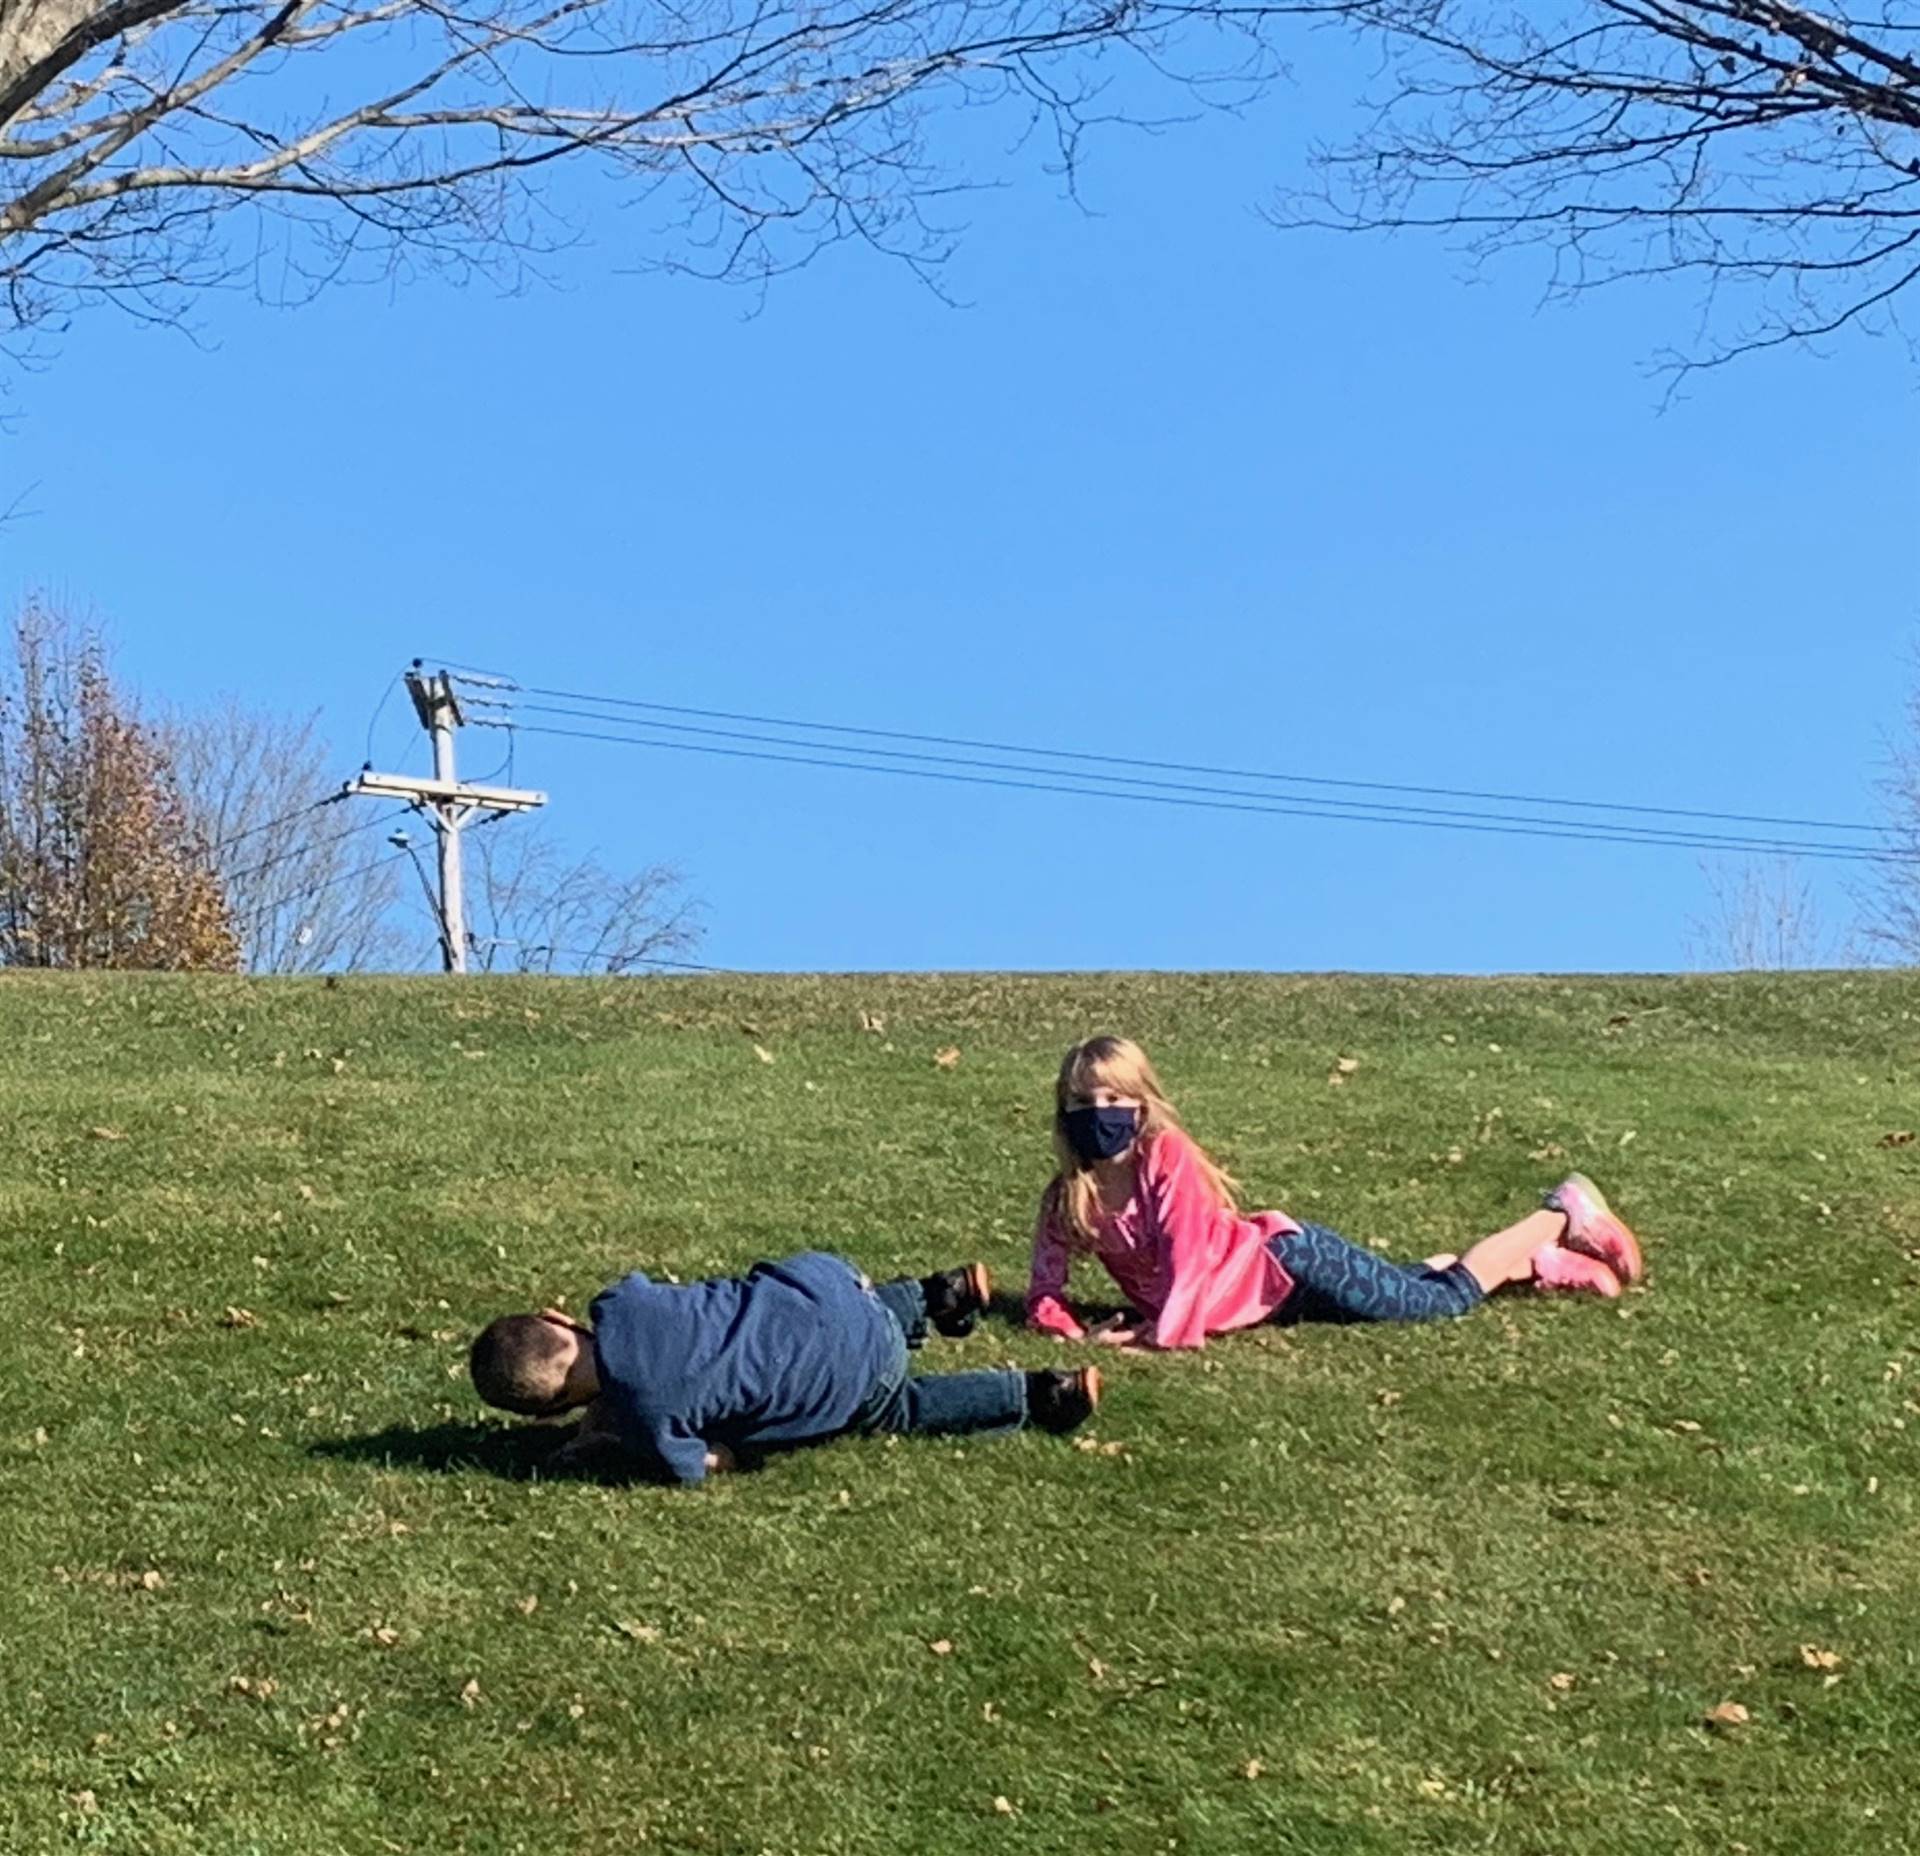 2 children roll down a hill. 